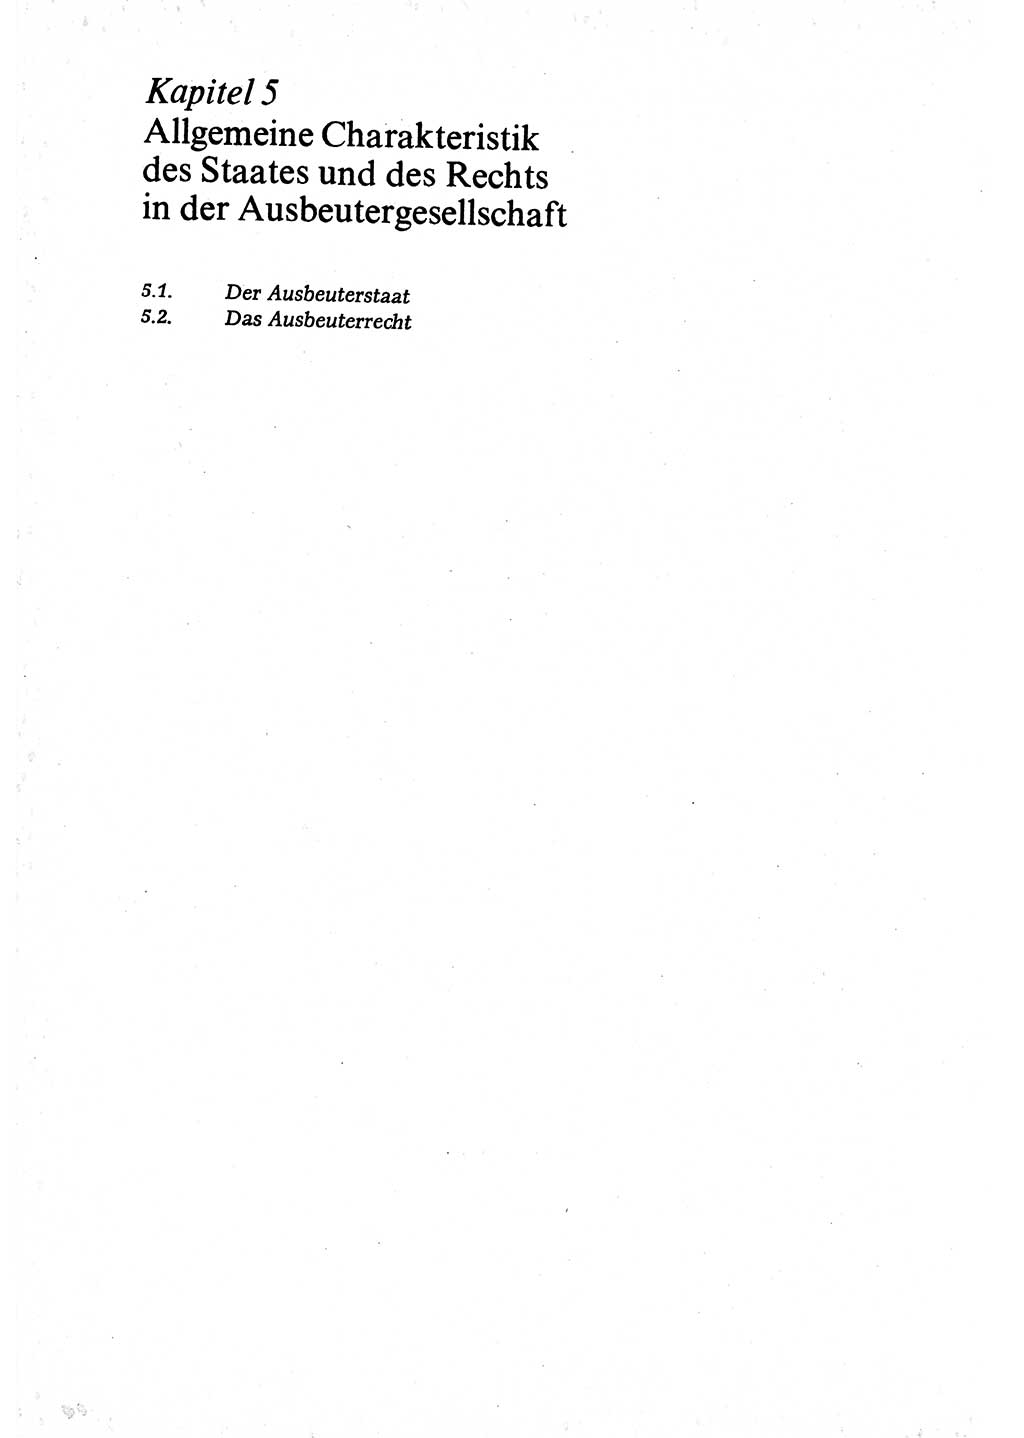 Marxistisch-leninistische (ML) Staats- und Rechtstheorie [Deutsche Demokratische Republik (DDR)], Lehrbuch 1980, Seite 110 (ML St.-R.-Th. DDR Lb. 1980, S. 110)